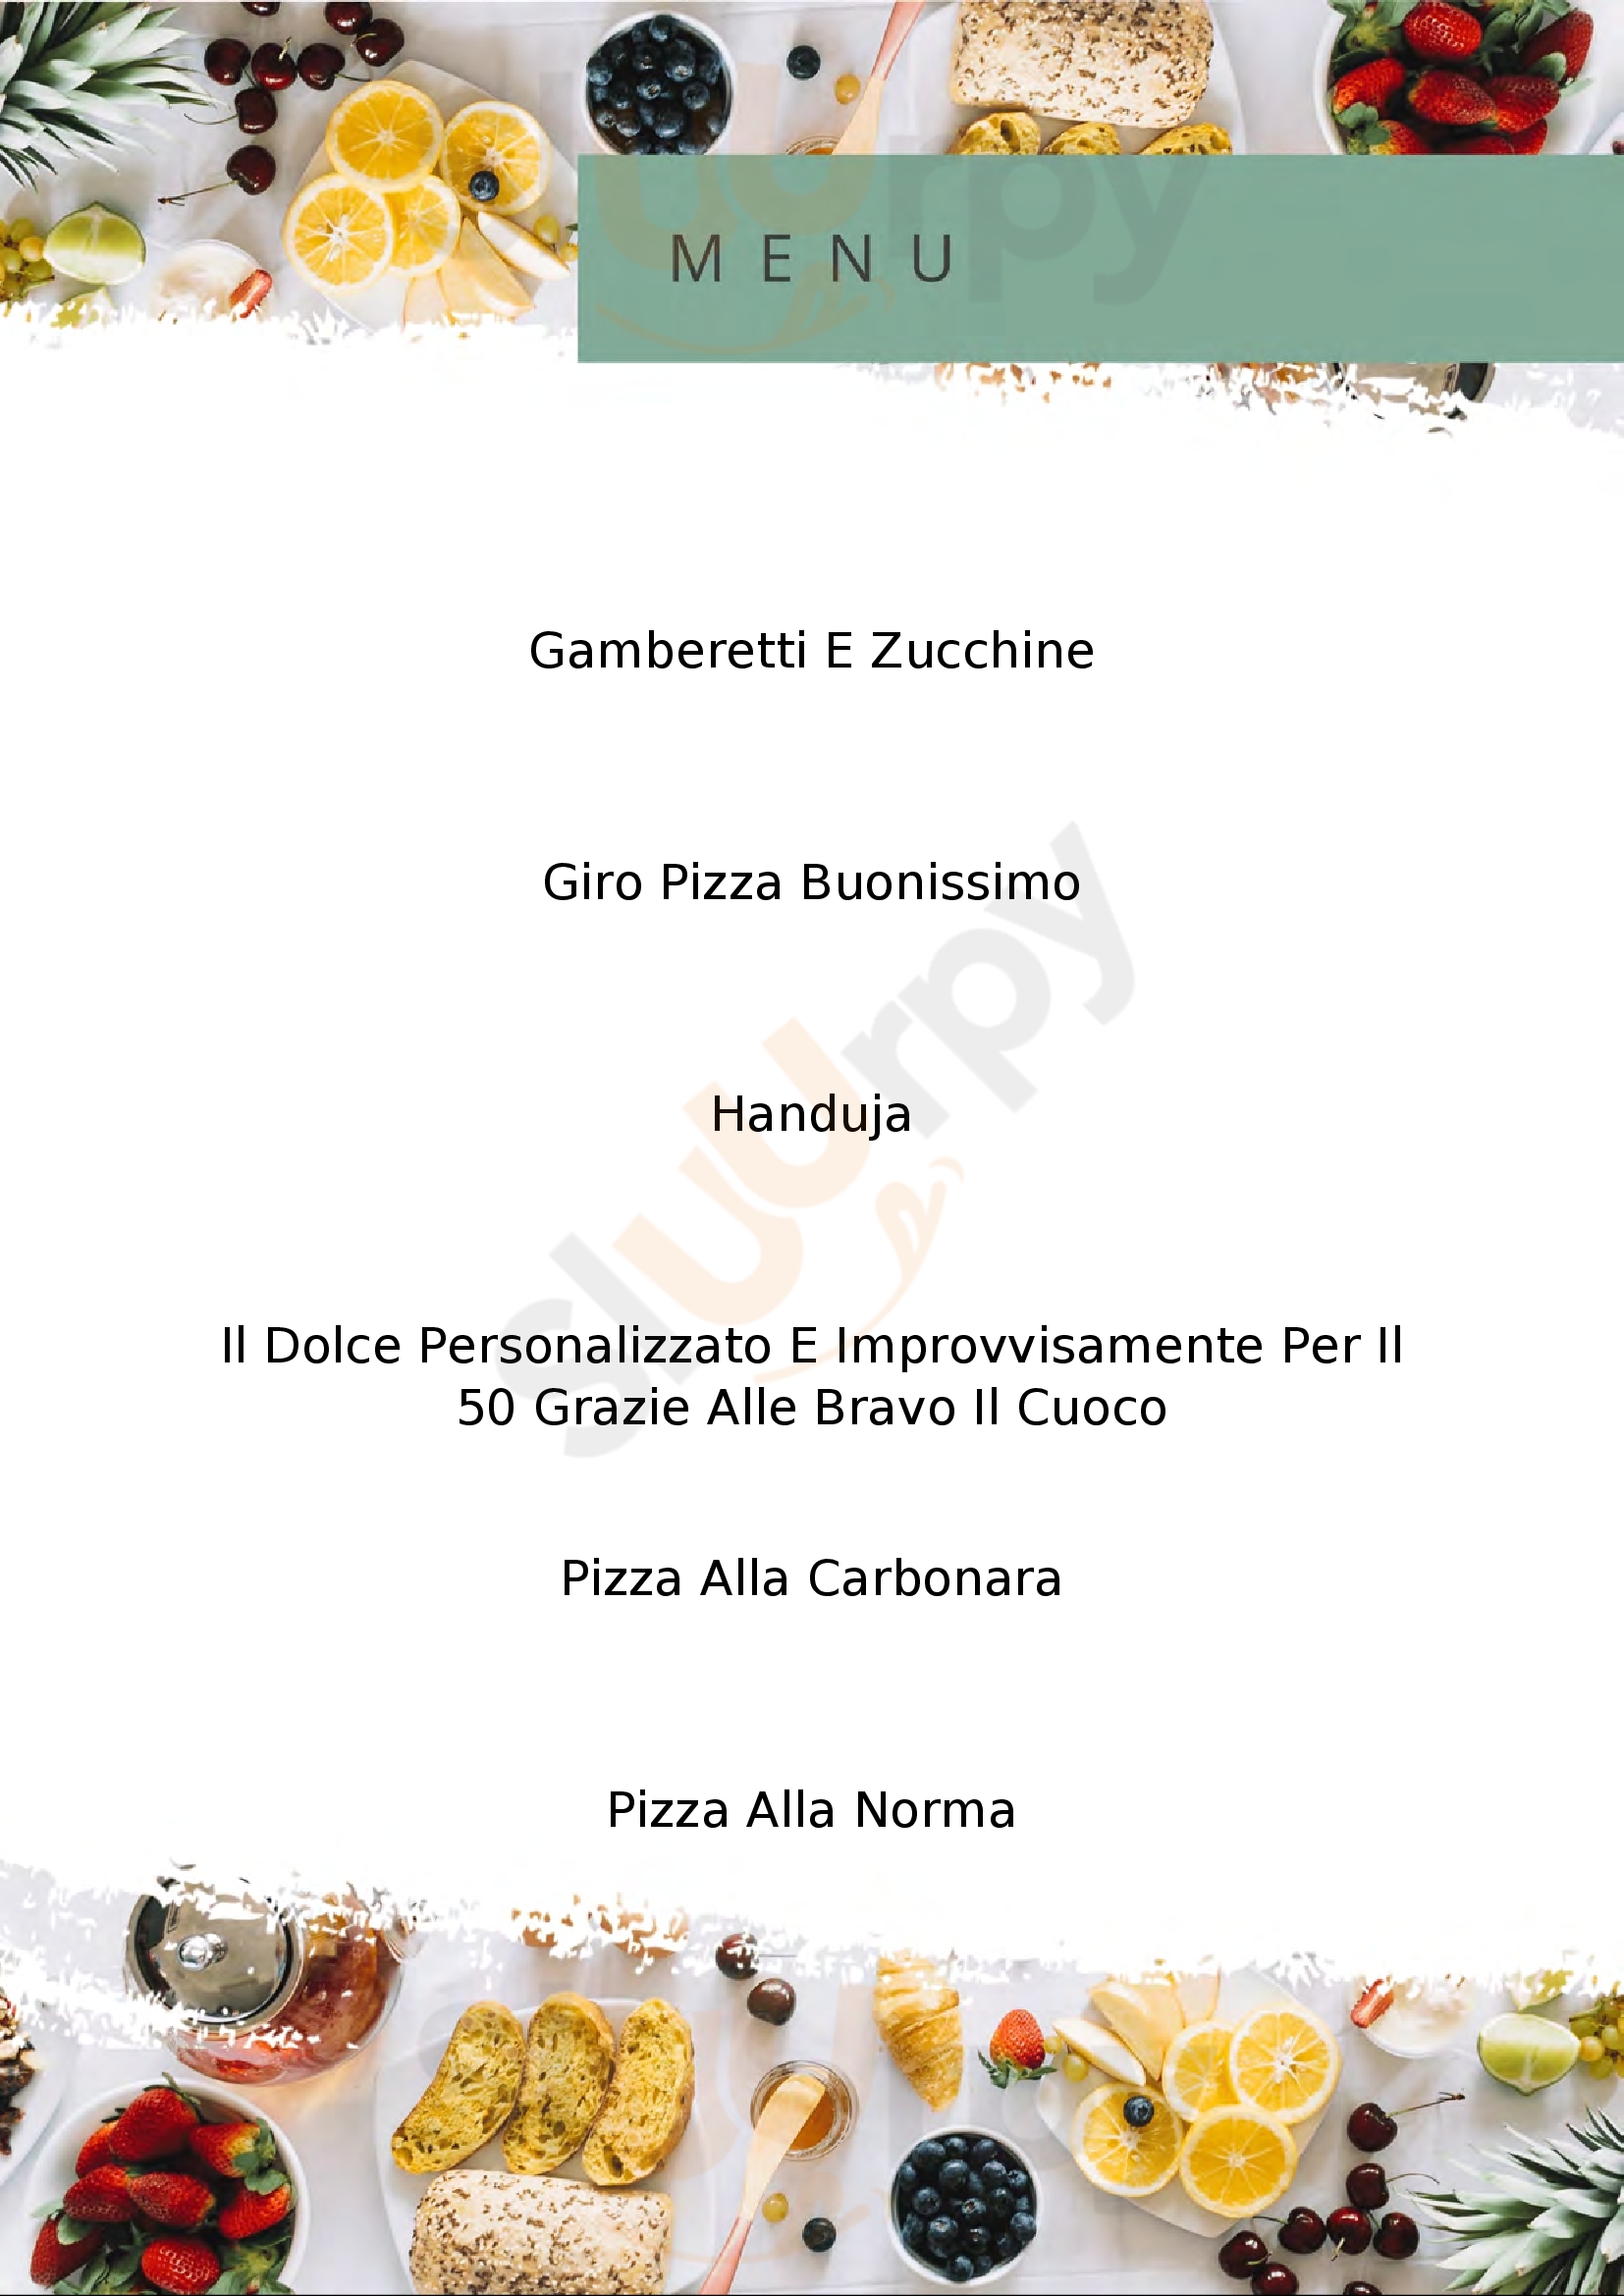 PizzaRound No Limits - Orsenigo Orsenigo menù 1 pagina